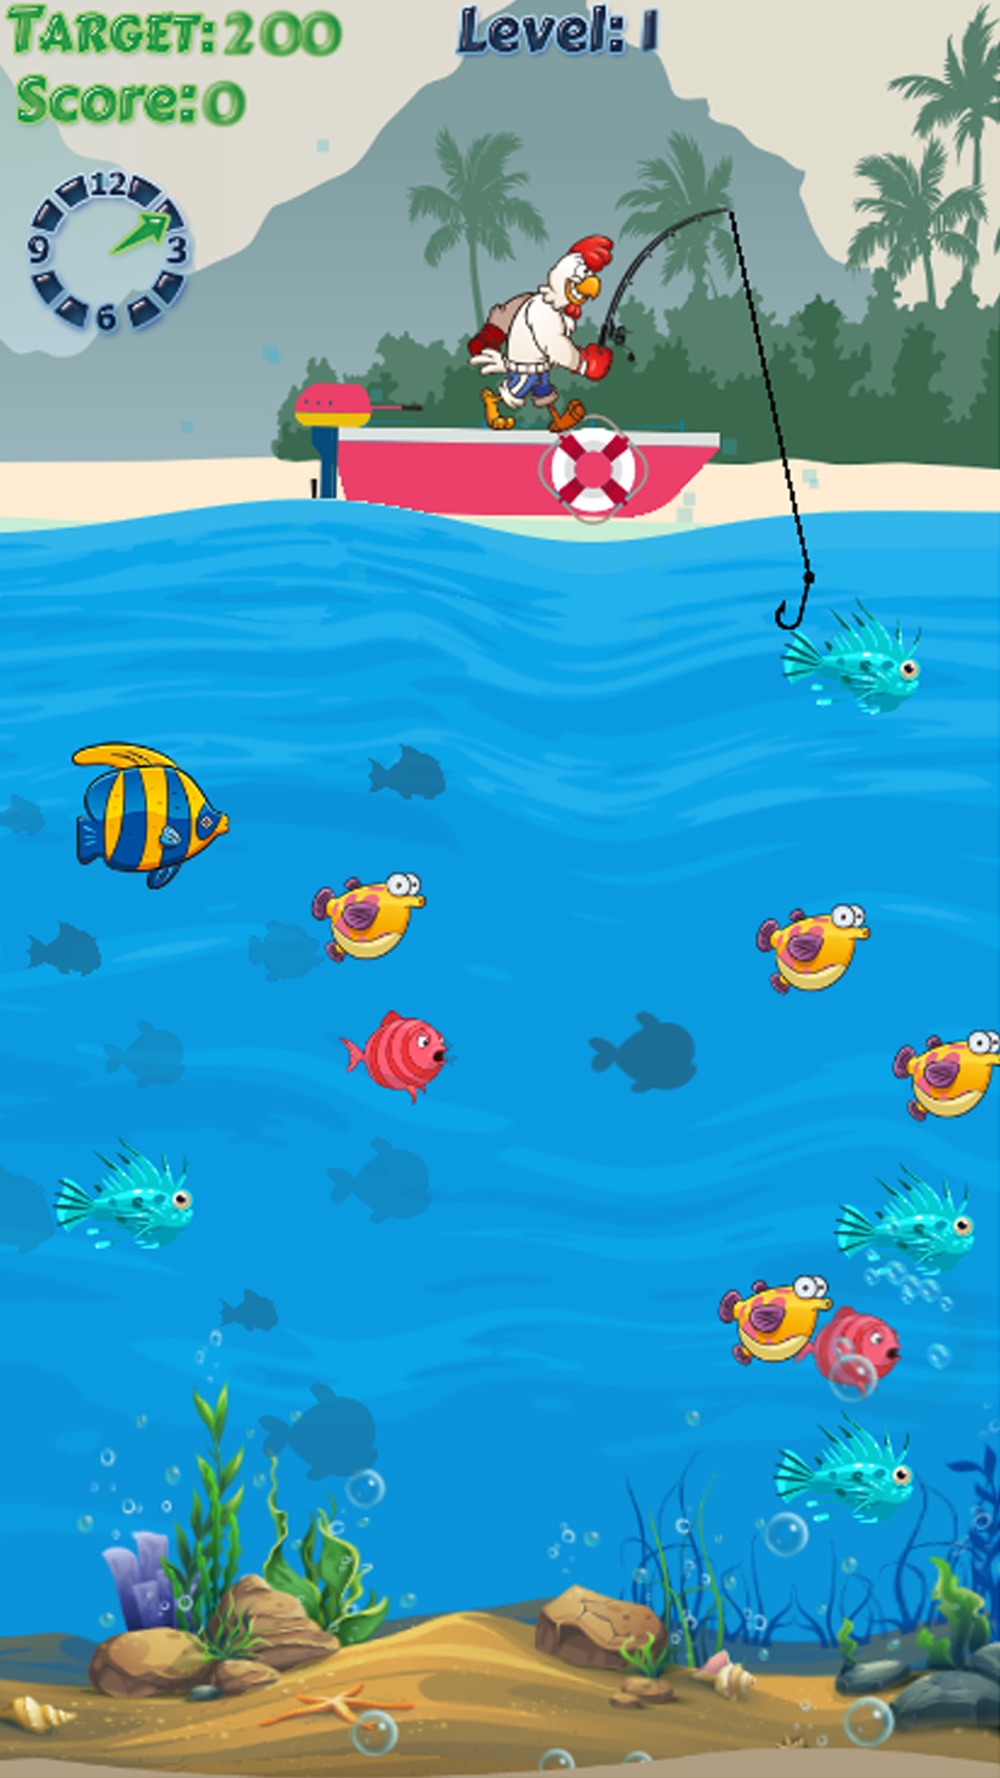 チキン釣りゲーム 魚 狩猟 ゲーム 楽しみのために 子供のために Free Download App For Iphone Steprimo Com